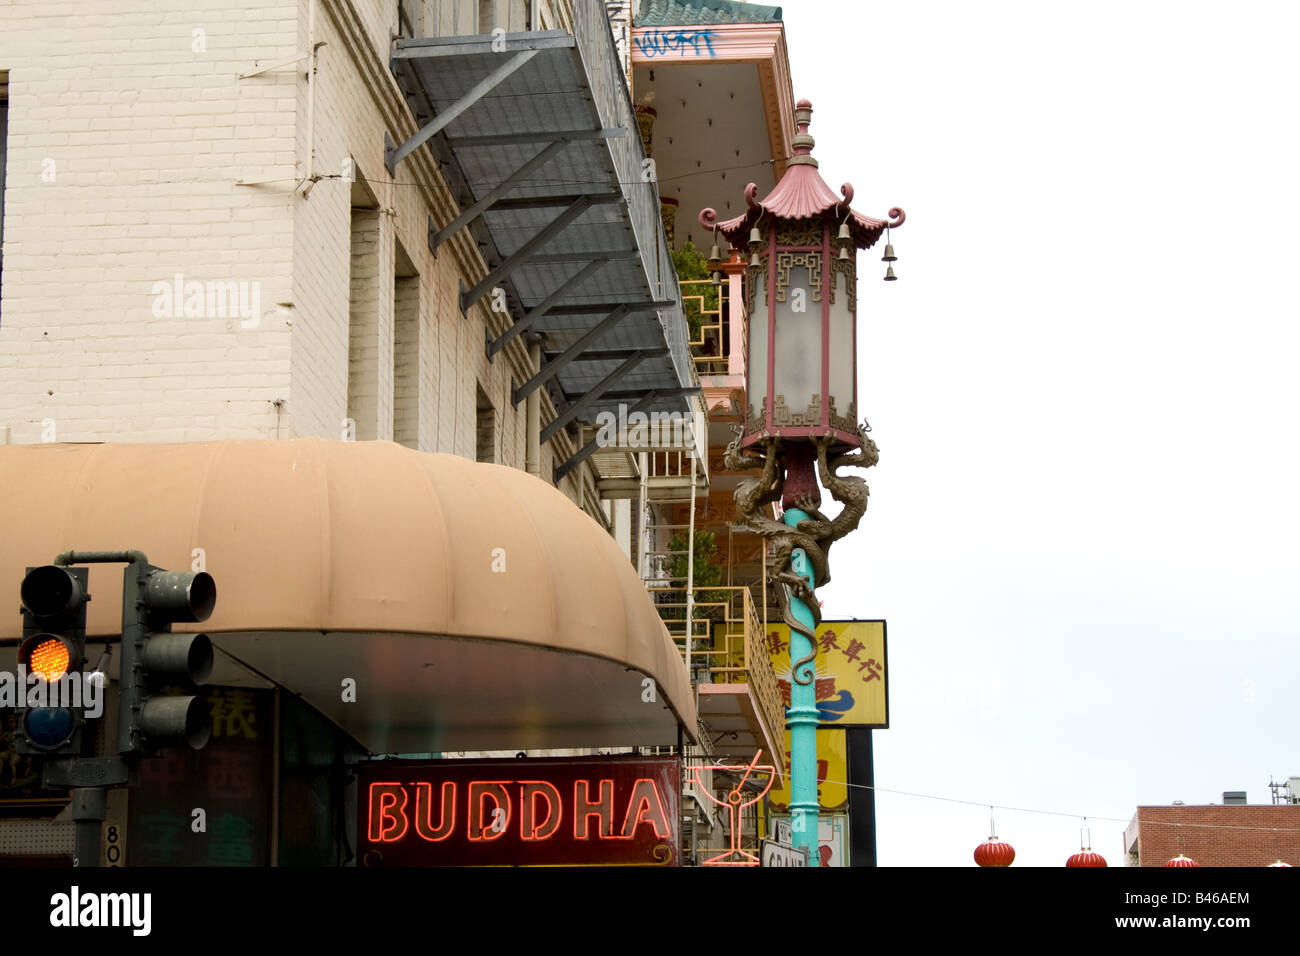 Ein Gebäude in Chinatown mit einem Neon Buddha Zeichen, San Francisco, Kalifornien Stockfoto